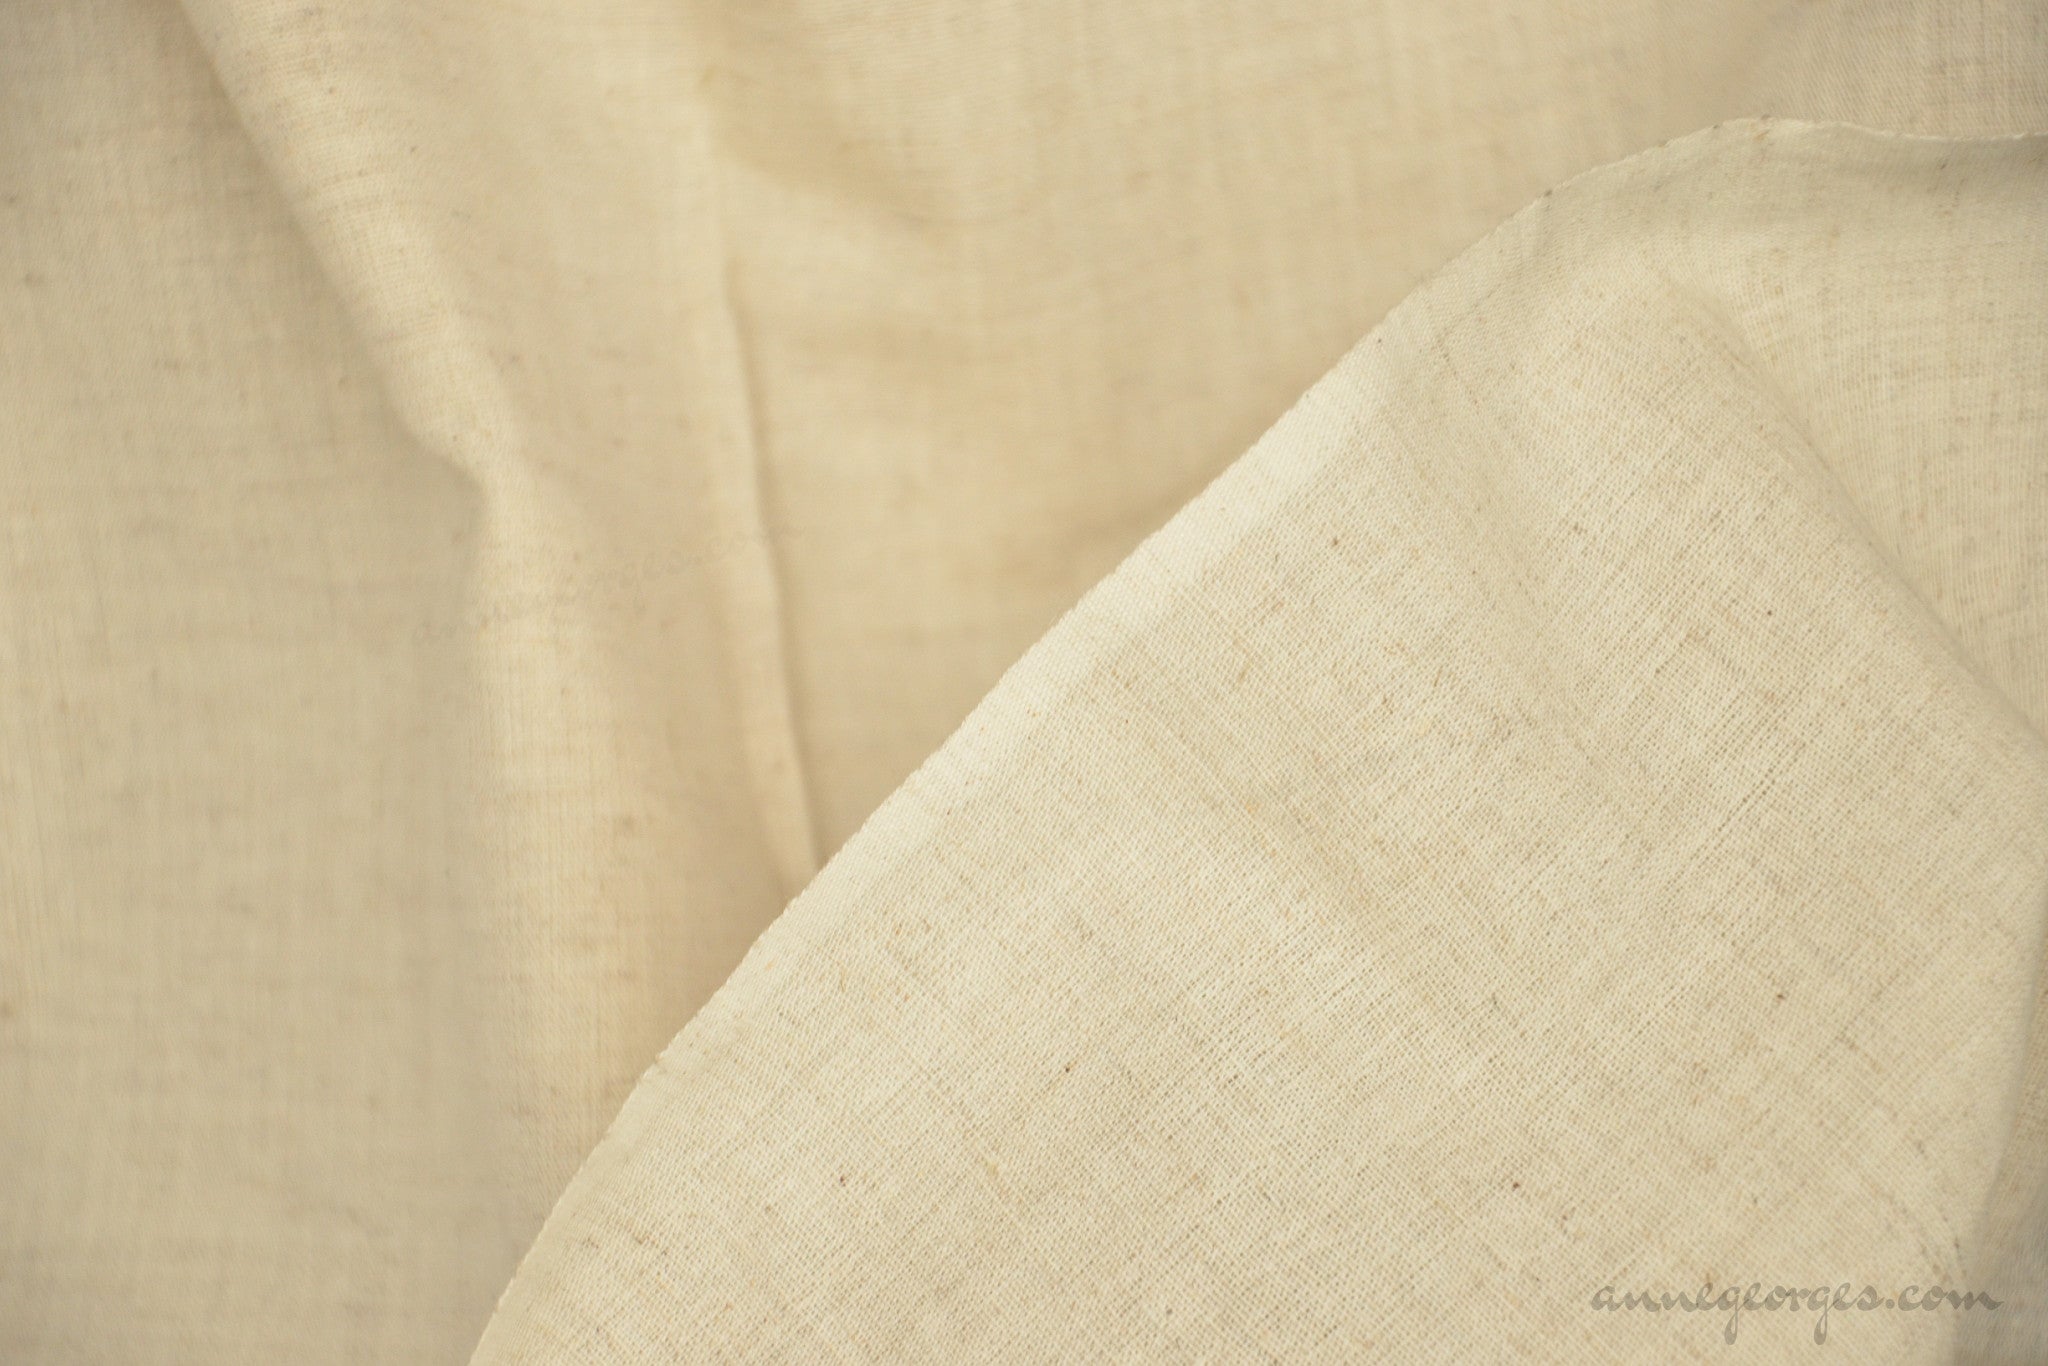 Linen Blend & Linen Cotton Blend Fabric